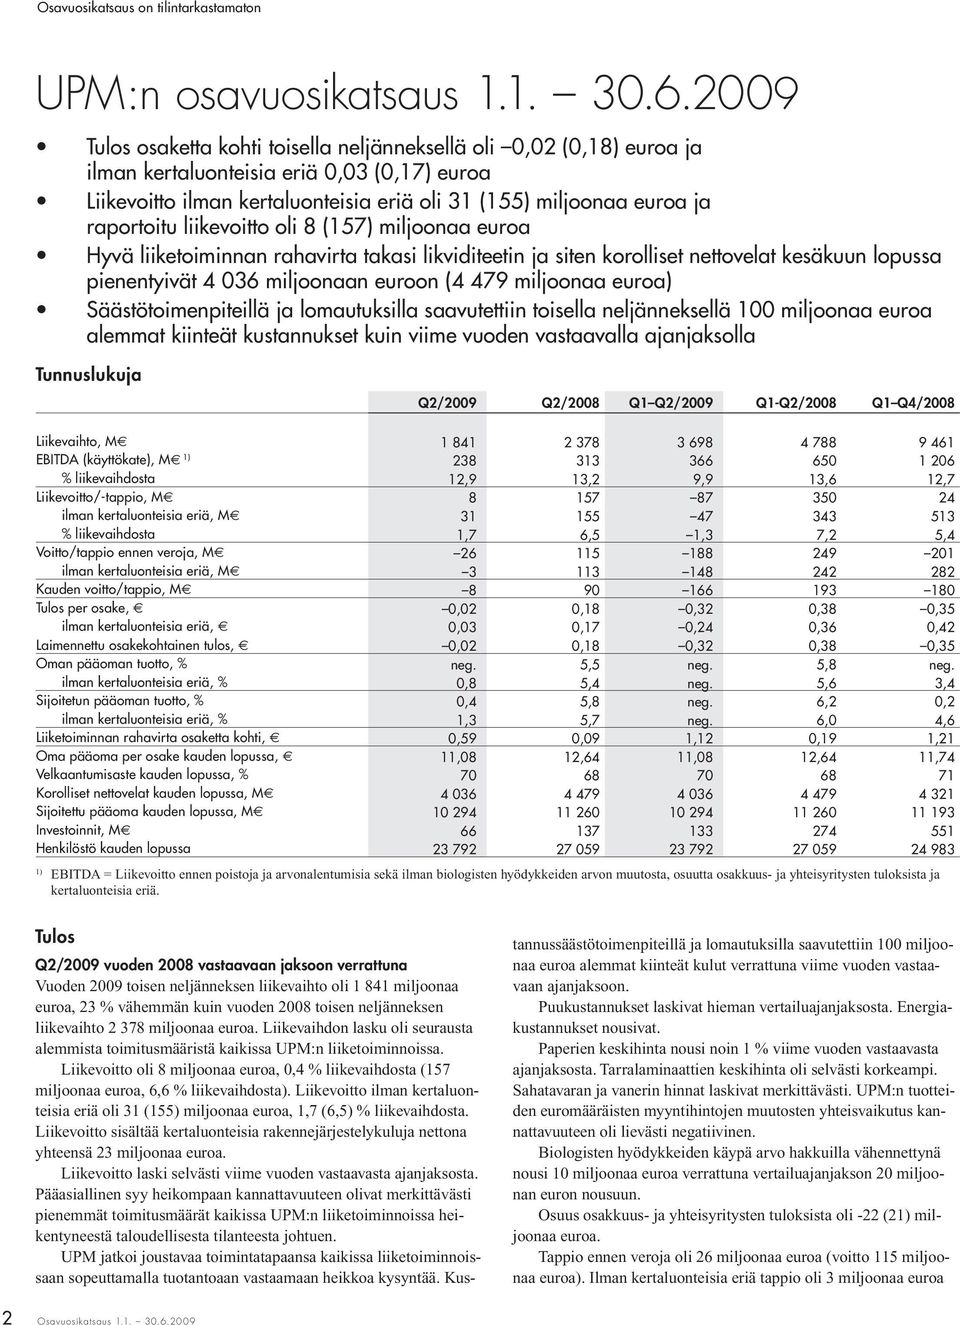 raportoitu liikevoitto oli 8 (157) miljoonaa euroa Hyvä liiketoiminnan rahavirta takasi likviditeetin ja siten korolliset nettovelat kesäkuun lopussa pienentyivät 4 036 miljoonaan euroon (4 479